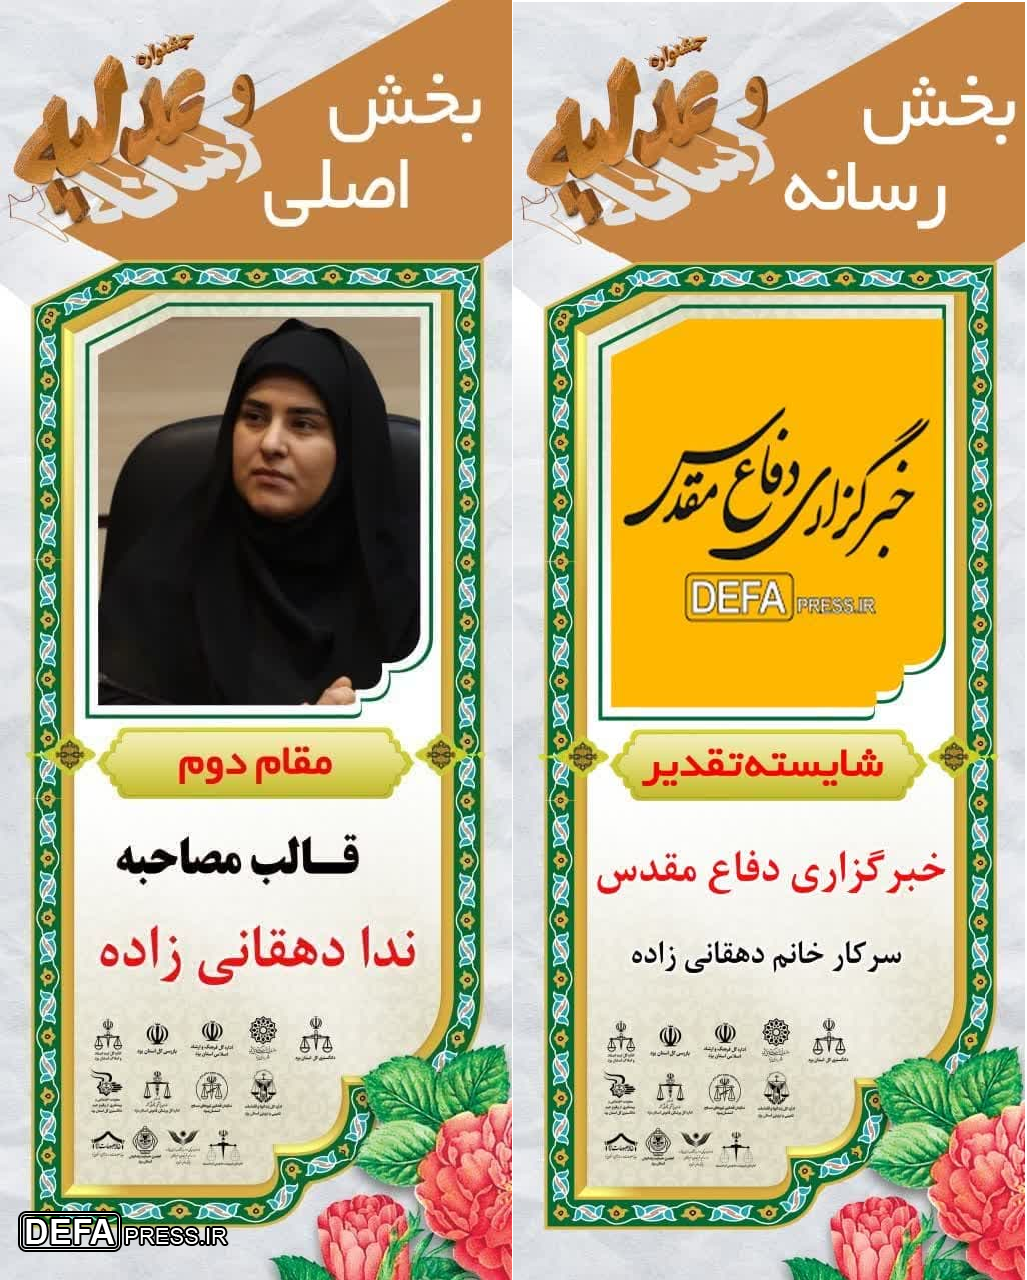 کسب دو مقام توسط خبرنگار دفاع مقدس یزد در جشنواره «عدلیه و رسانه»